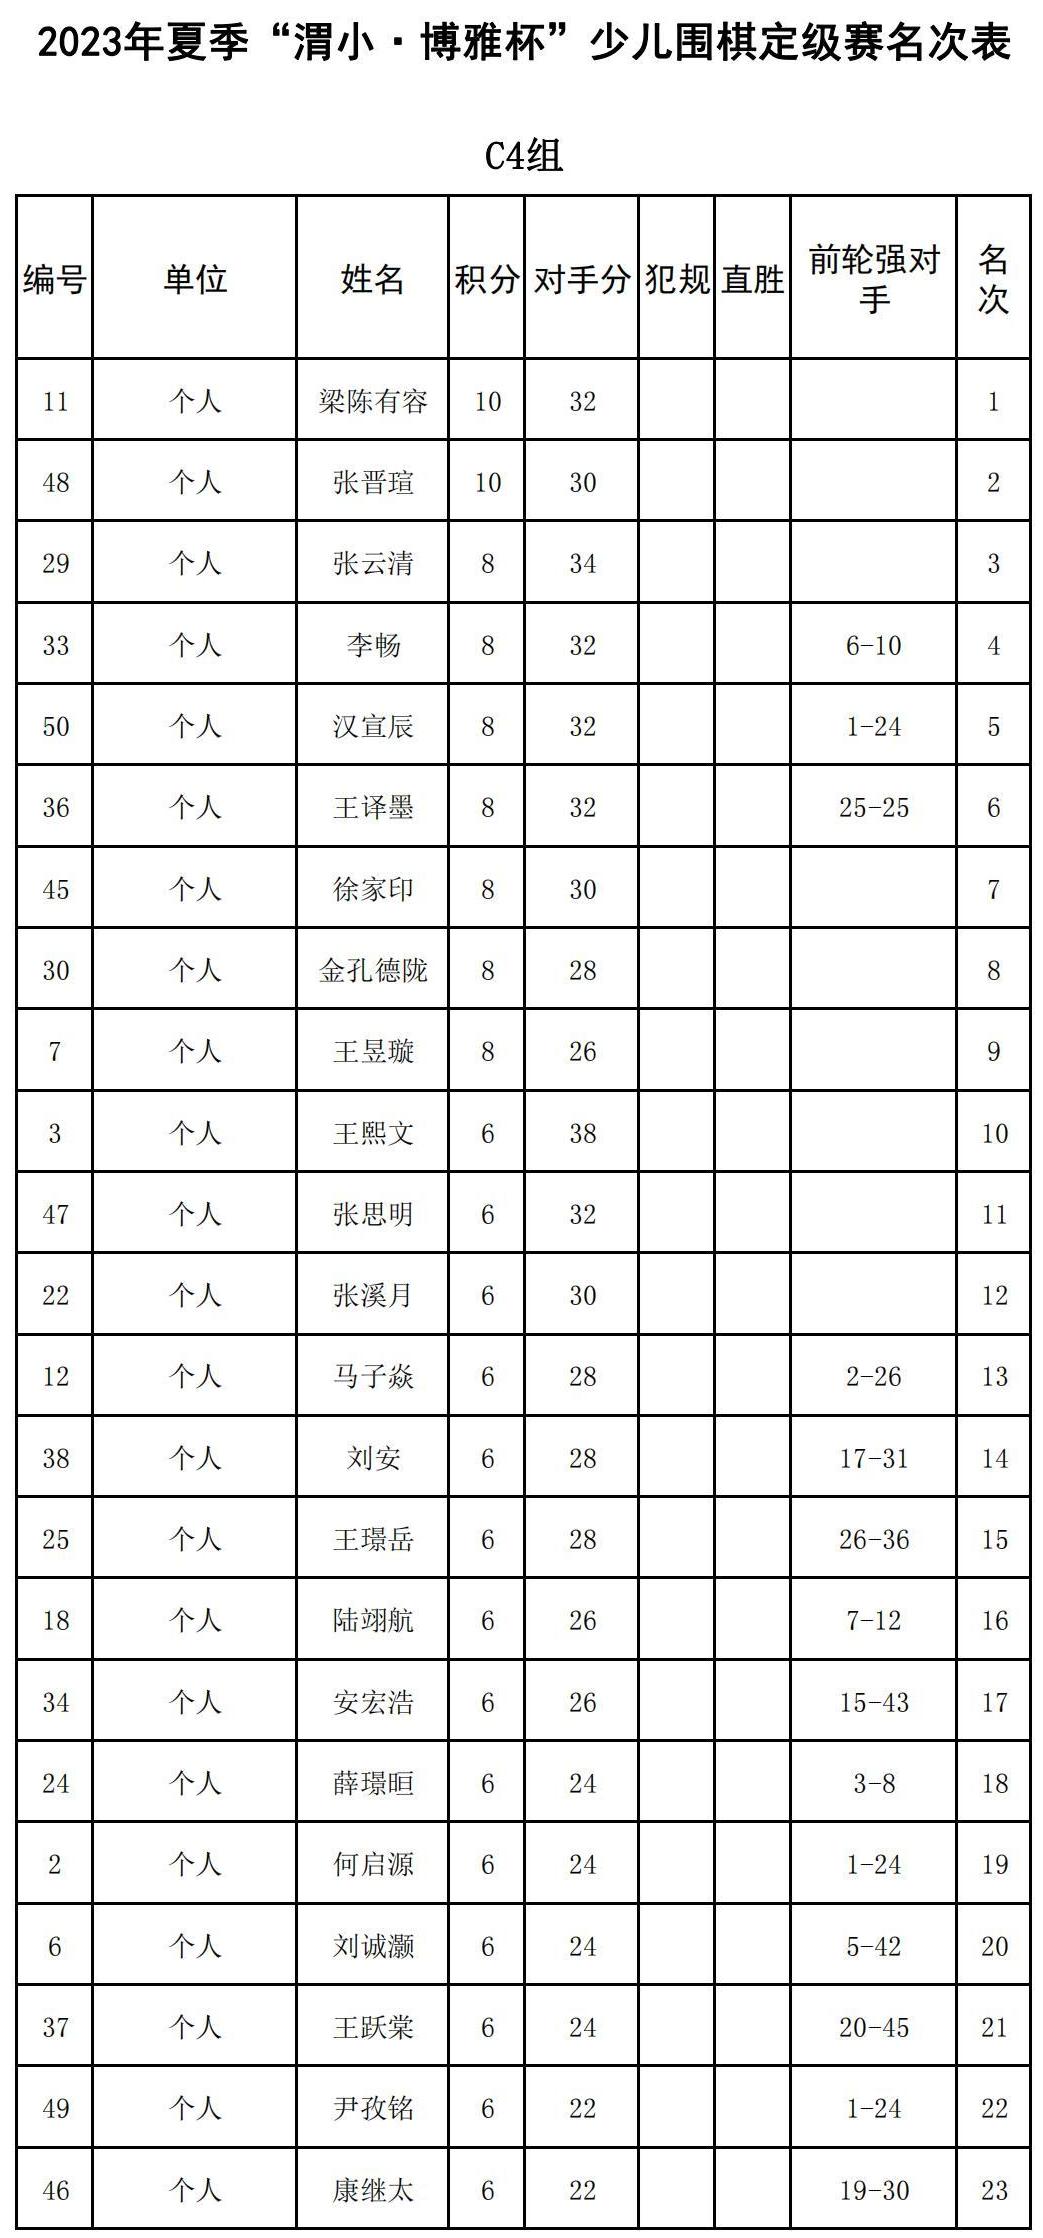 2023年夏季“渭小·博雅杯”少儿围棋定级赛C4组(名次表)_00.jpg